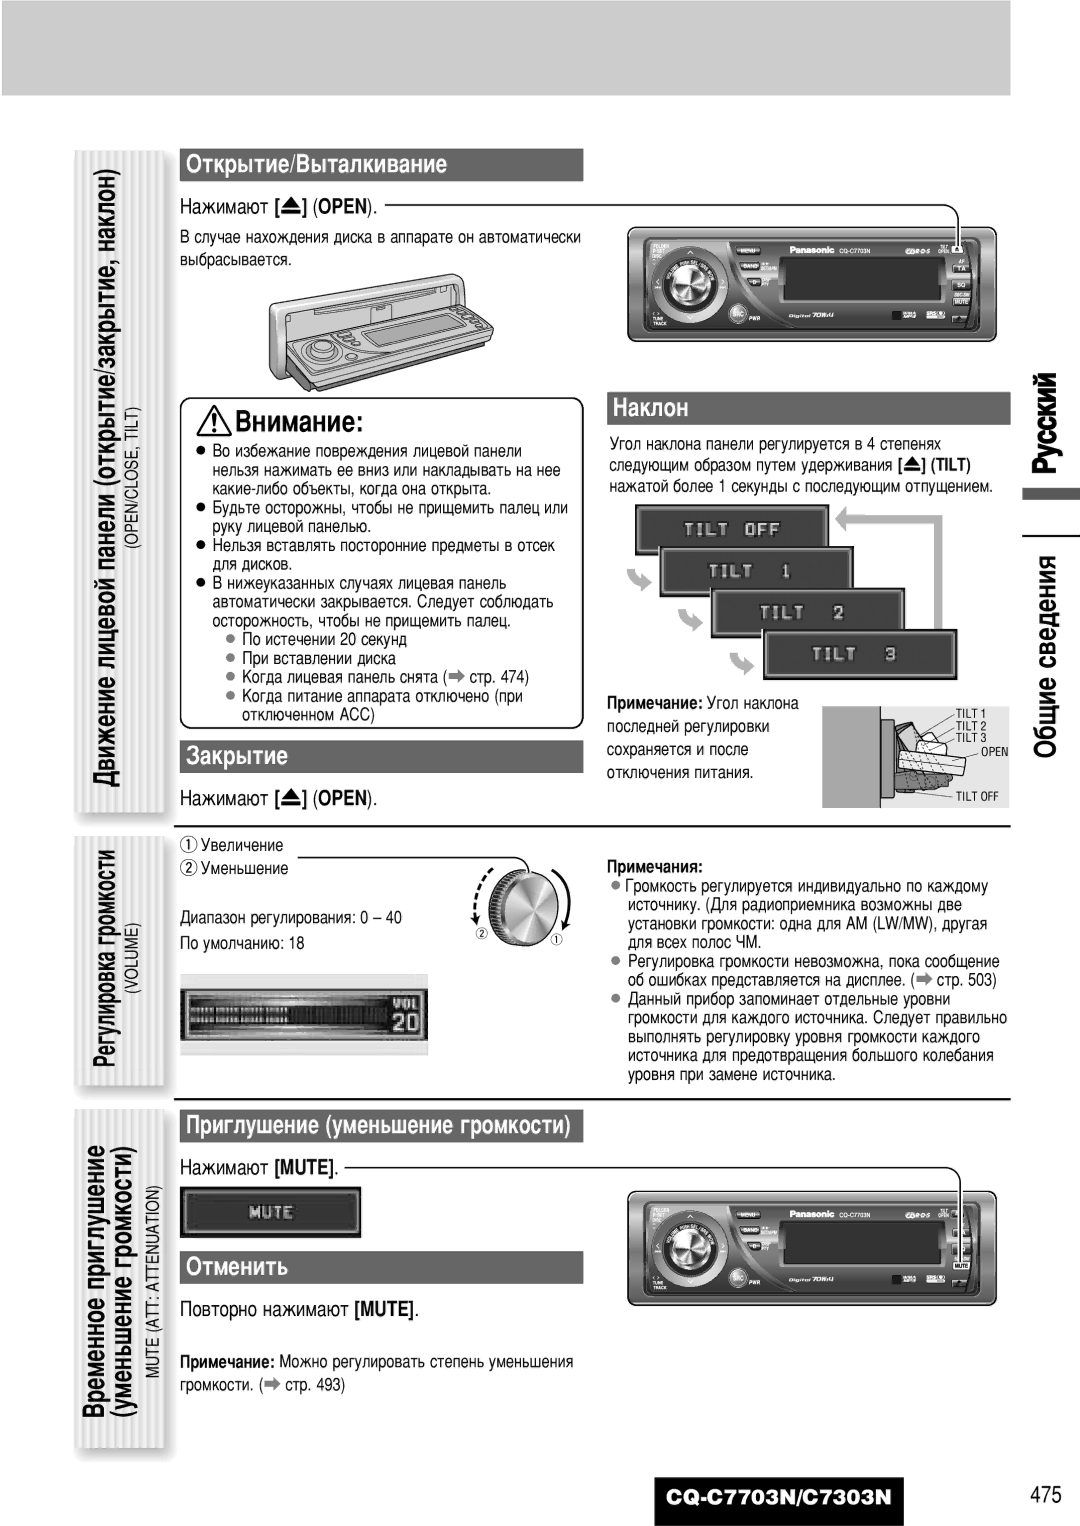 Panasonic CQ-C7703N operating instructions ·˘ËÂ Ò‚Â‰ÂÌËﬂ êÛÒÒÍËÈ, ‡Í˚Úëâ, ‡Íîóì, Ë„Îû¯Âìëâ Ûïâì¸¯Âìëâ „Óïíóòúë, Éúïâìëú¸ 